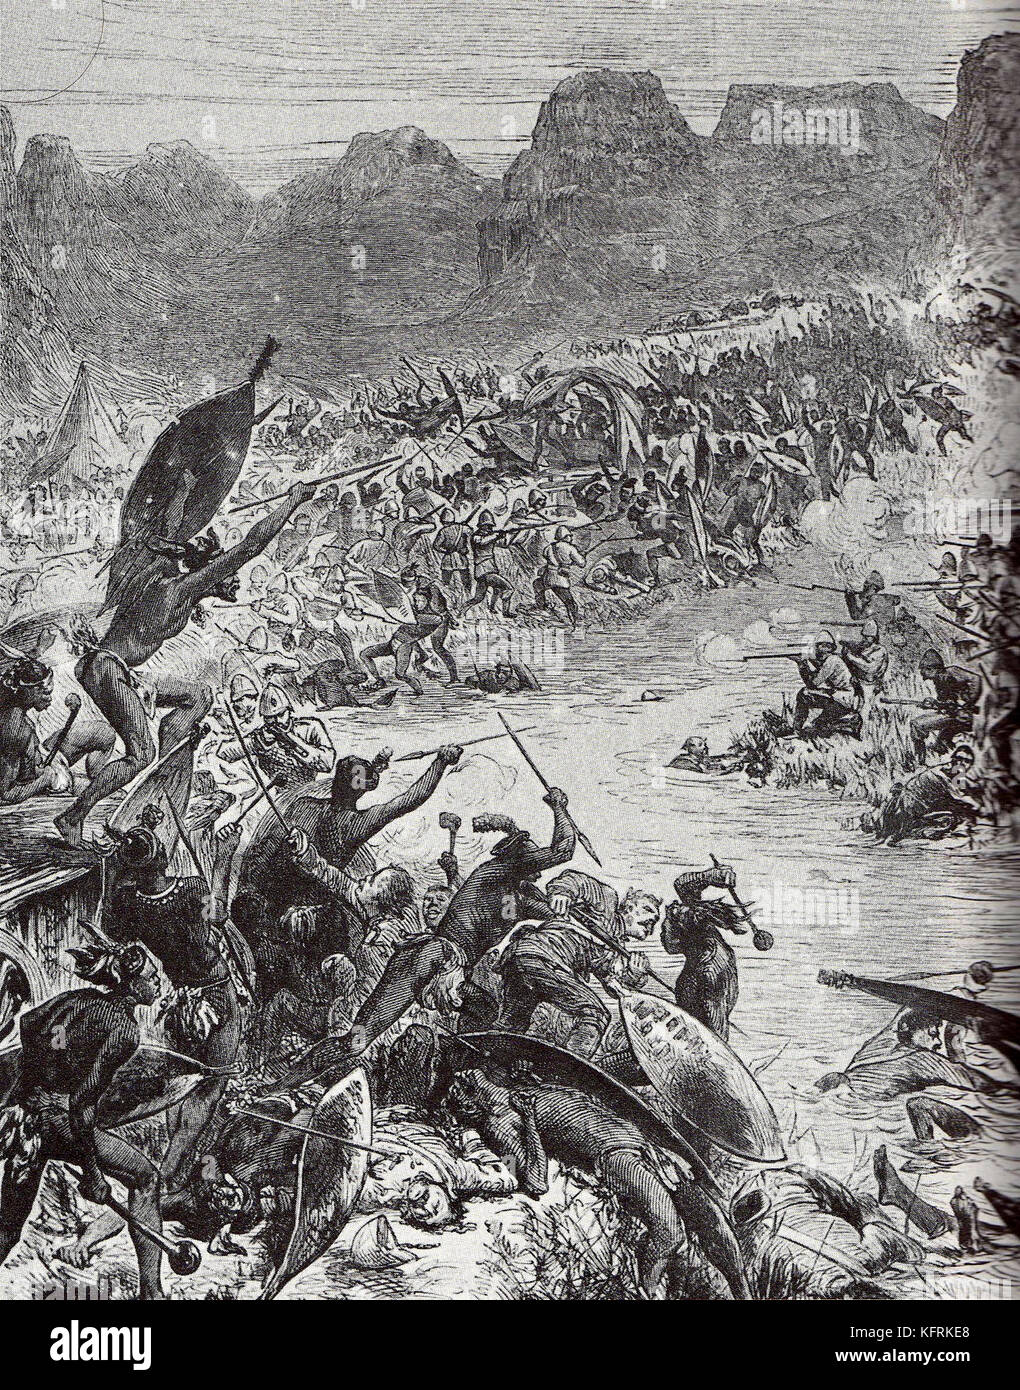 Bataille de la rivière intombe. La bataille de intombe, intombi river dérive était une petite action menée sur 12 mars 1879, entre les forces armées et zoulou soldats britanniques à la défense d'un convoi d'approvisionnement. Banque D'Images